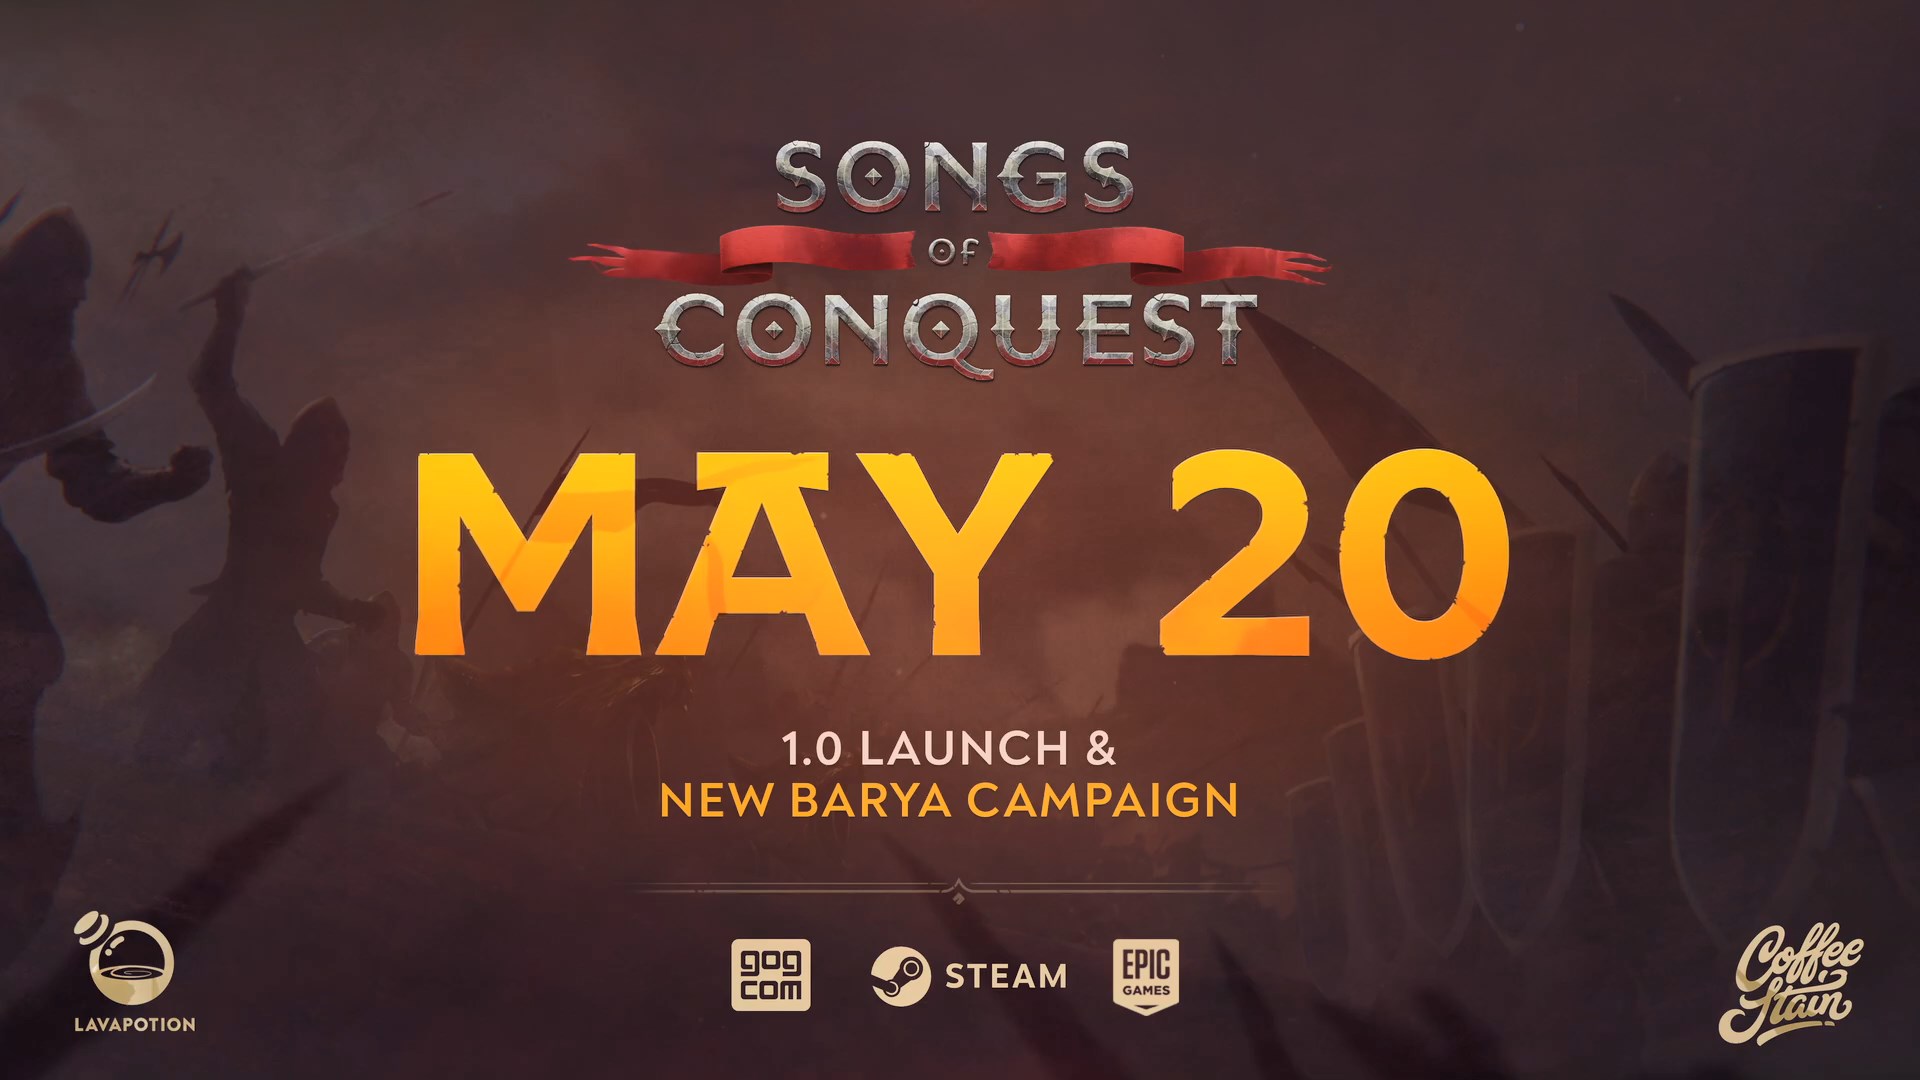 回合制策略游戏《克制之歌》即将停止争先体验 5月20日正式发售